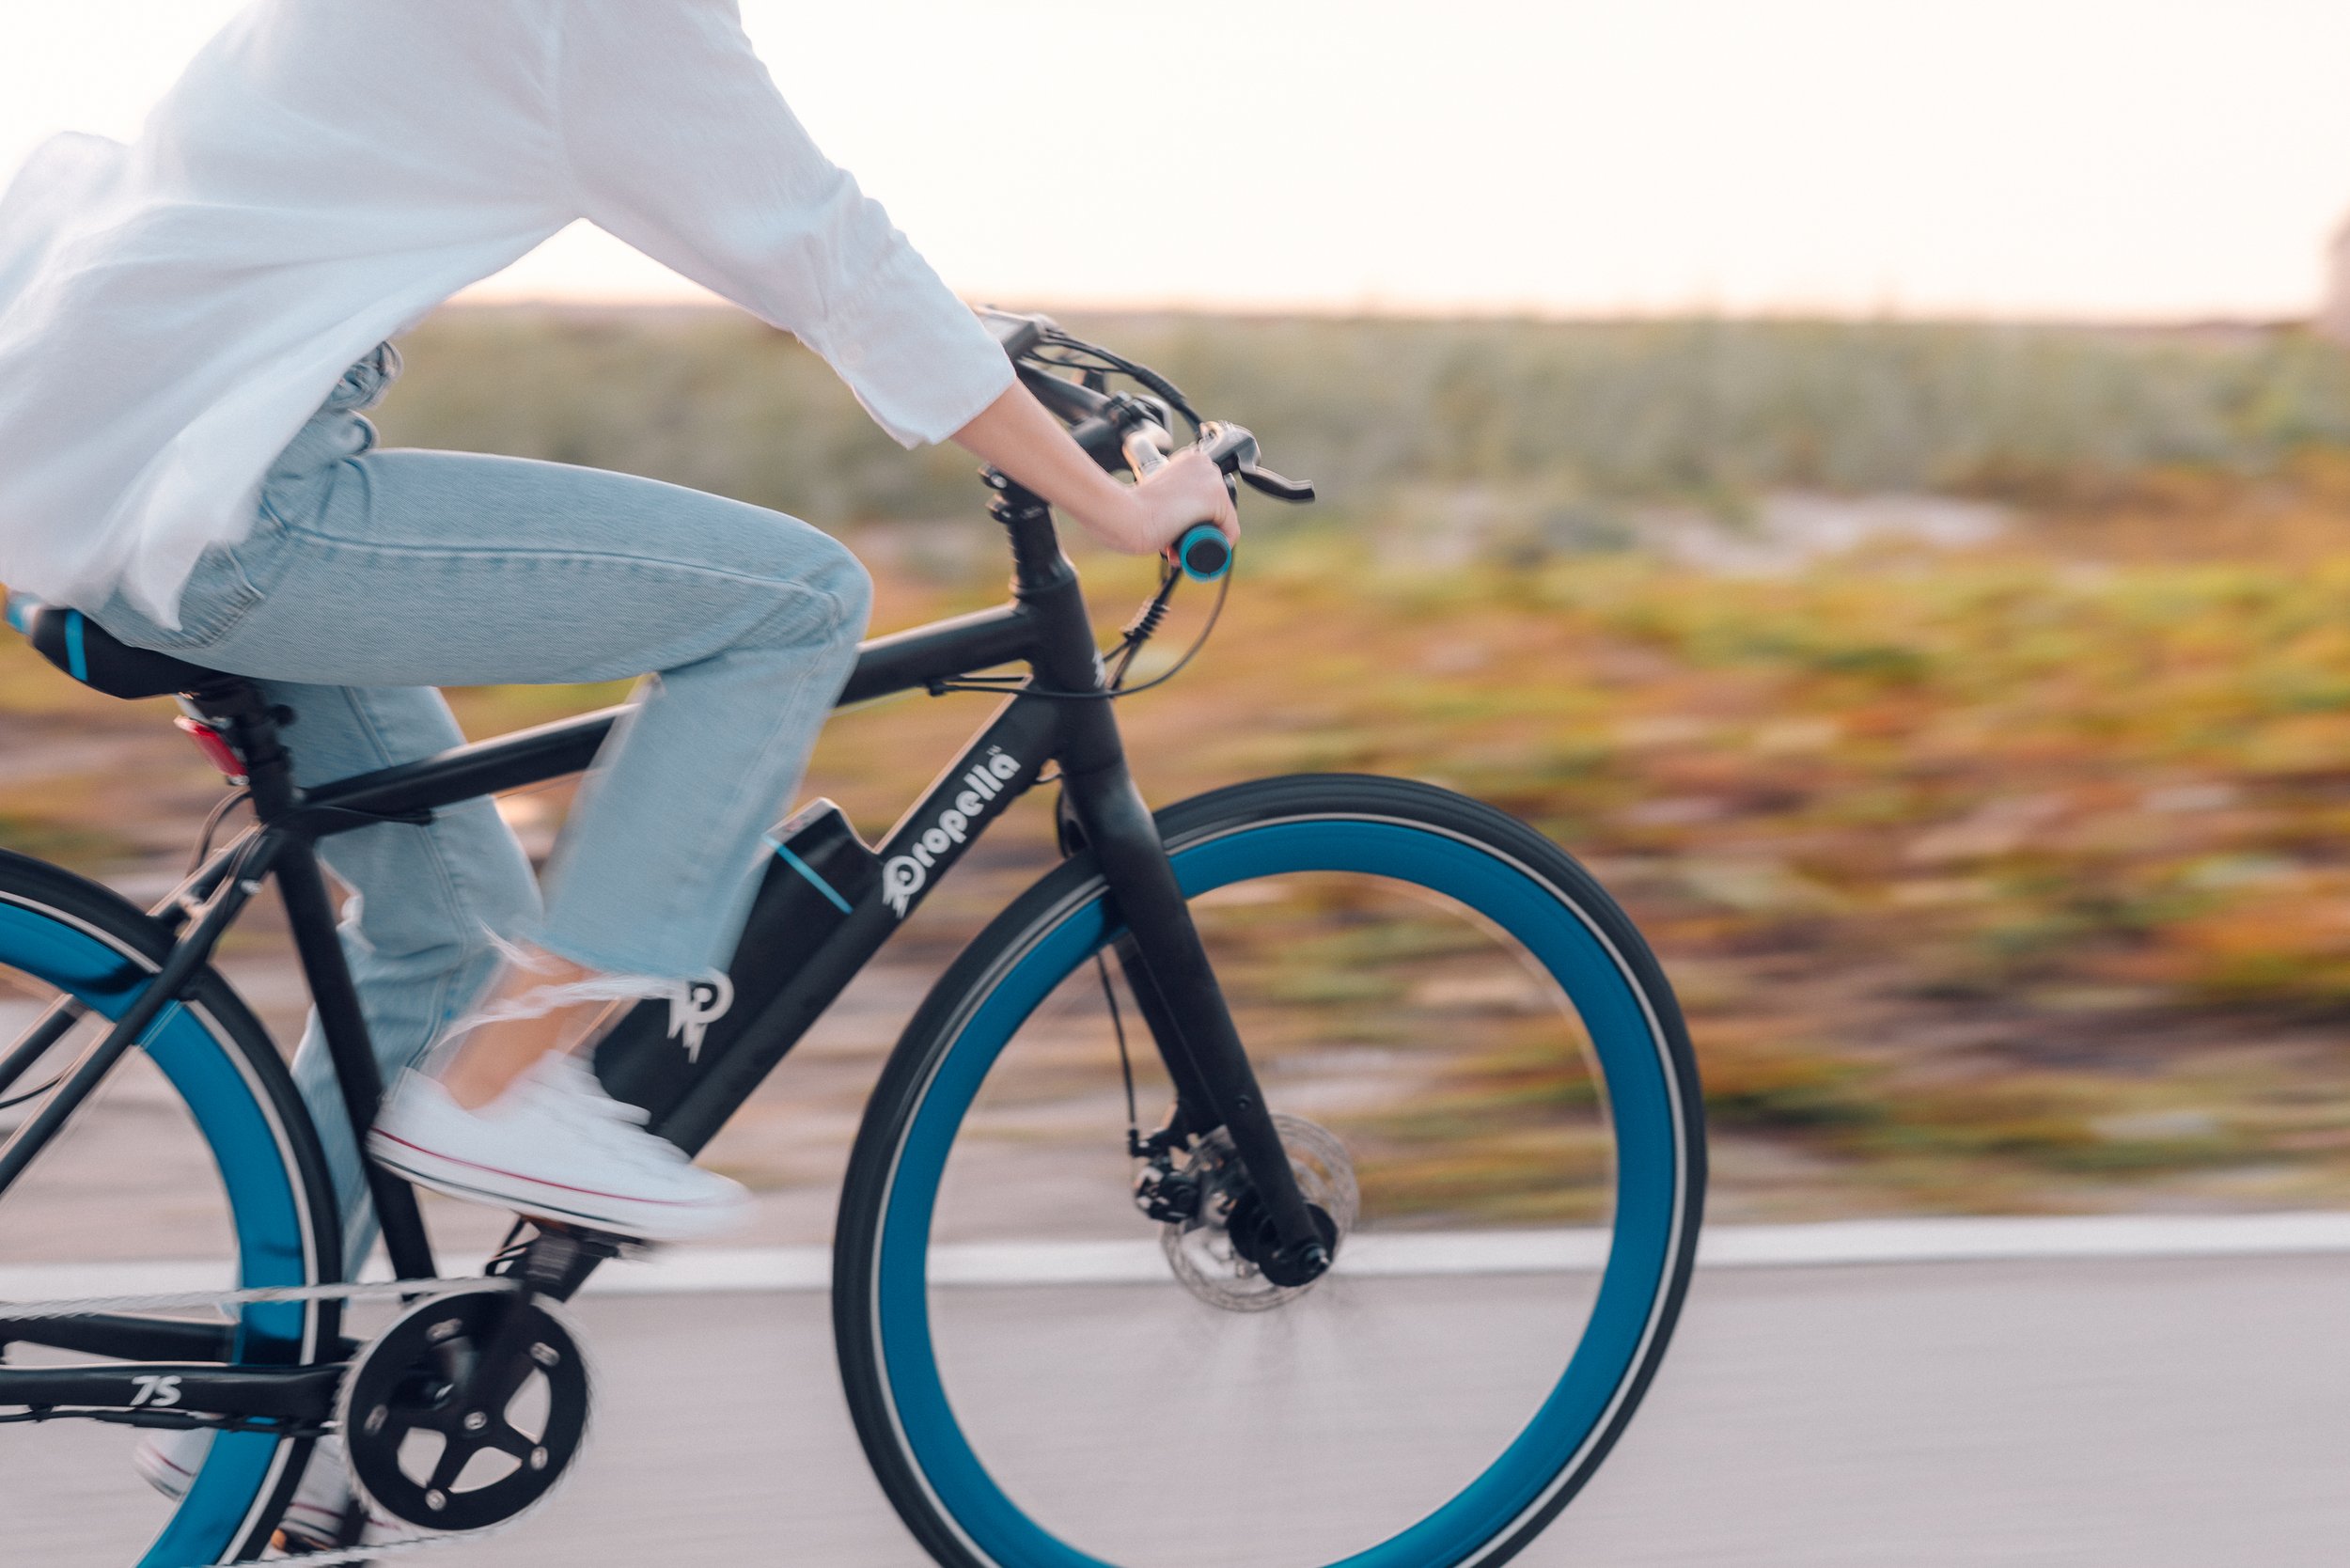 Test Ride a Propella E-Bike — Propella Electric Bikes